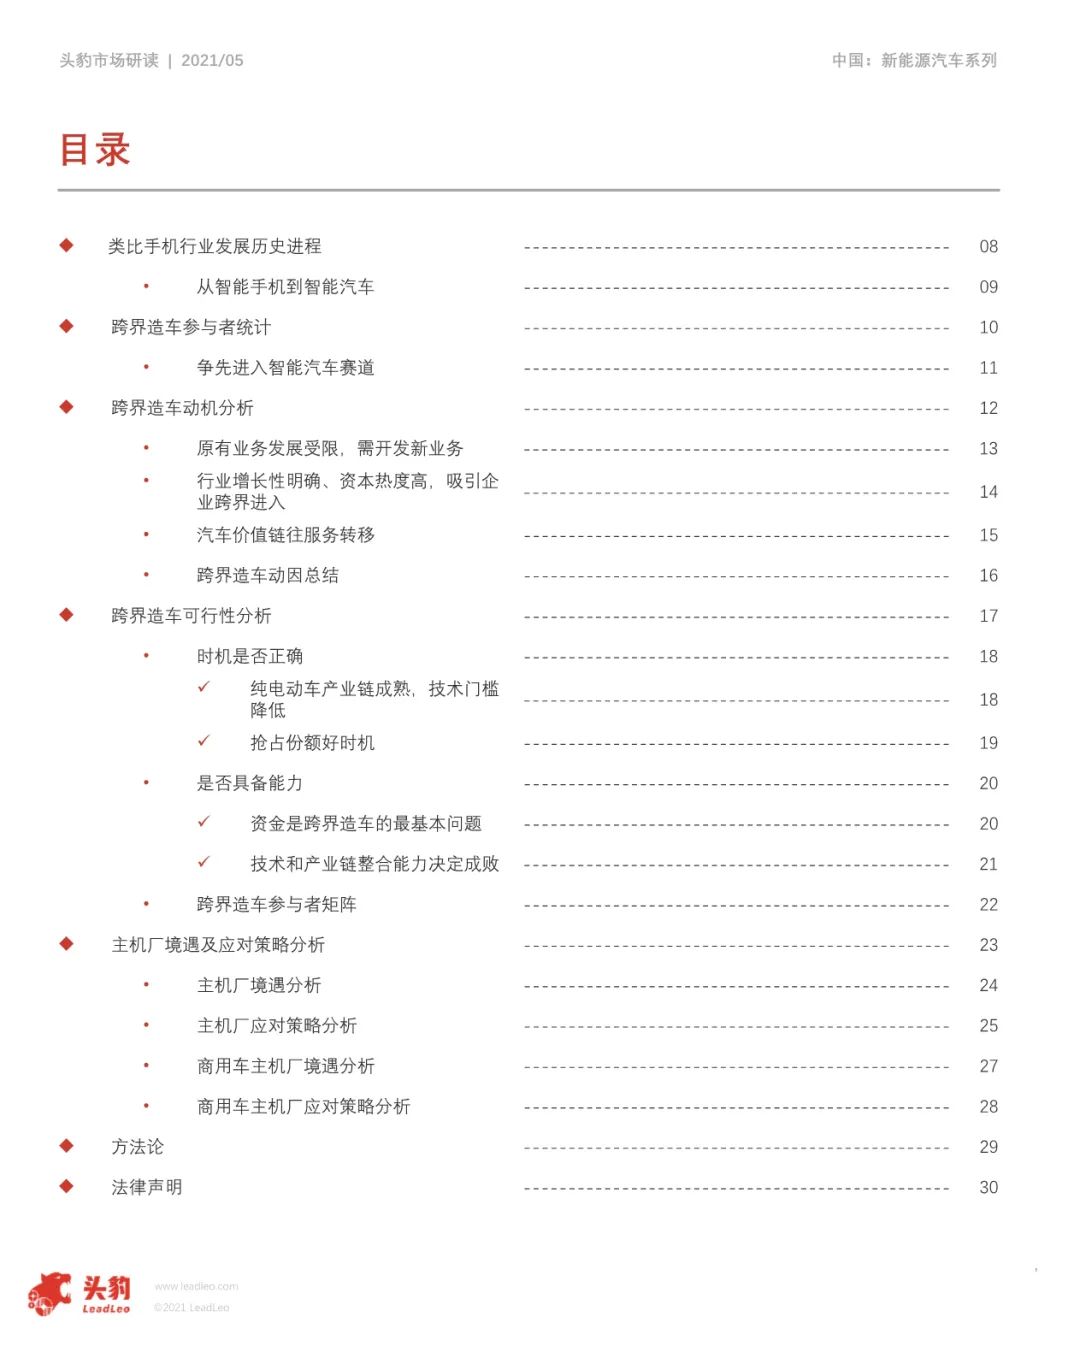 【报告】2021年中国跨界造车竞争力分析（附28页PDF文件下载）